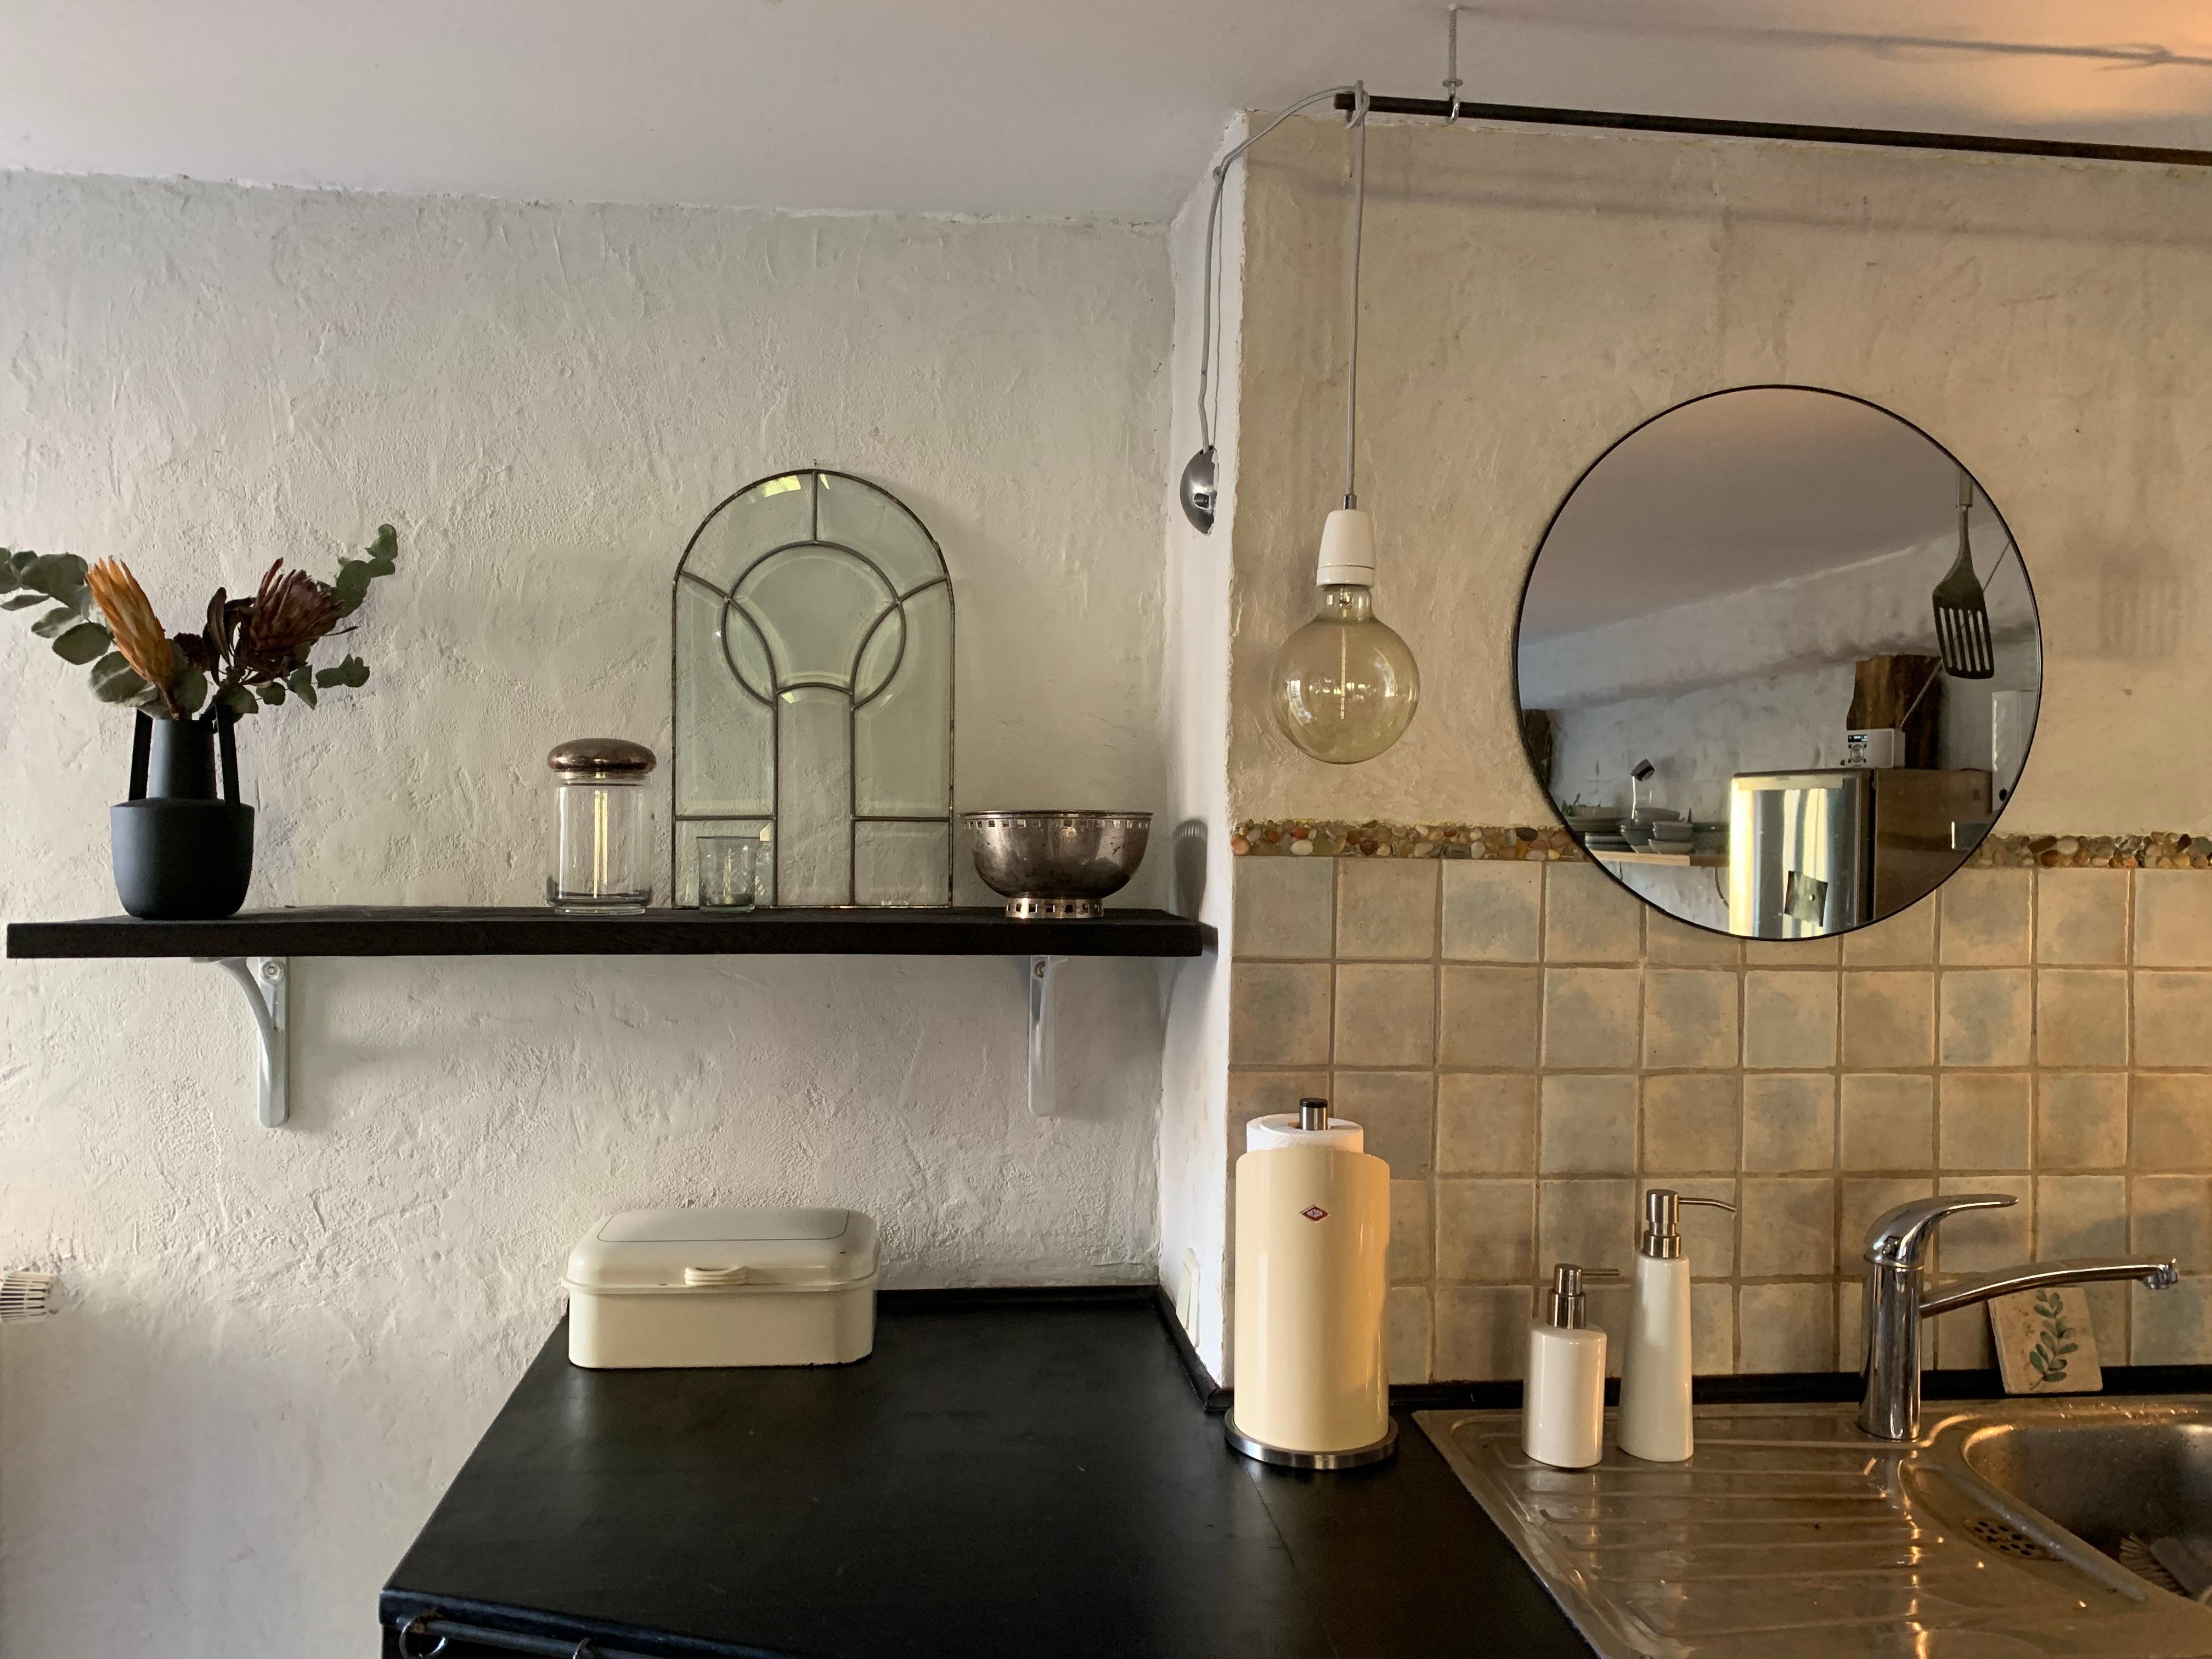 Küchenzeile mit Spiegel, selbst gefliest mit selbstgemachter Borte aus Kieseln #diy #altbauliebe #vintage 